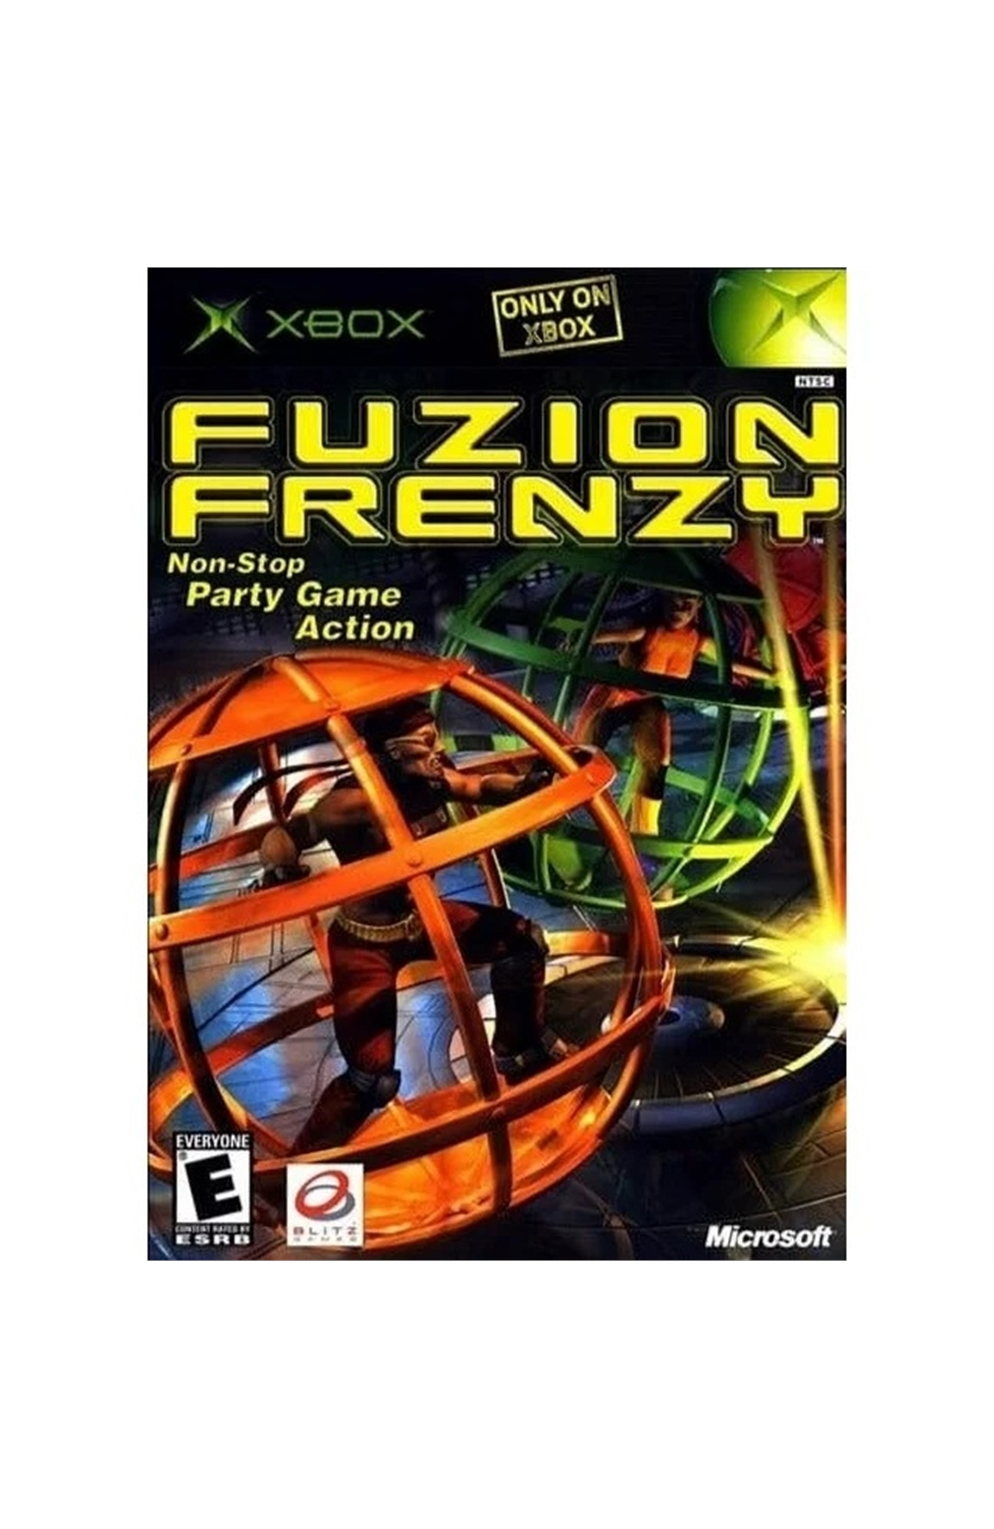 Xbox Xb Fuzion Frenzy